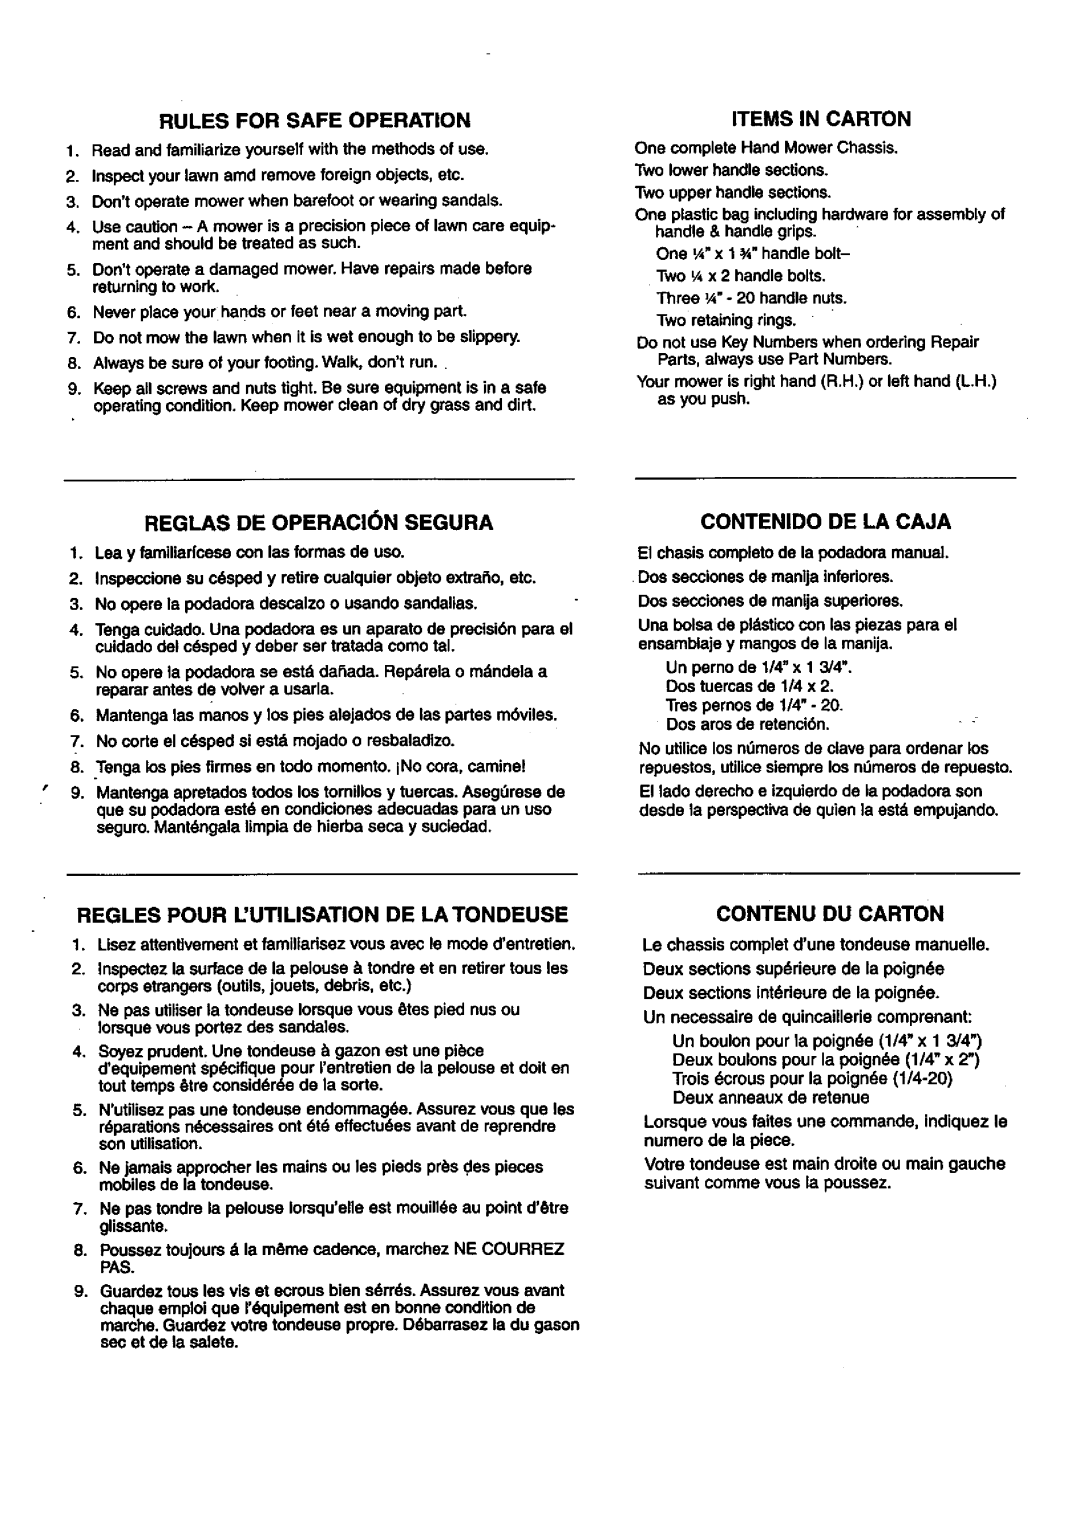 Craftsman 291.37614 owner manual Items In Carton, REGLAS DE OPERACI6N SEGURA, Contenido De La Caja, Contenu Du Carton 